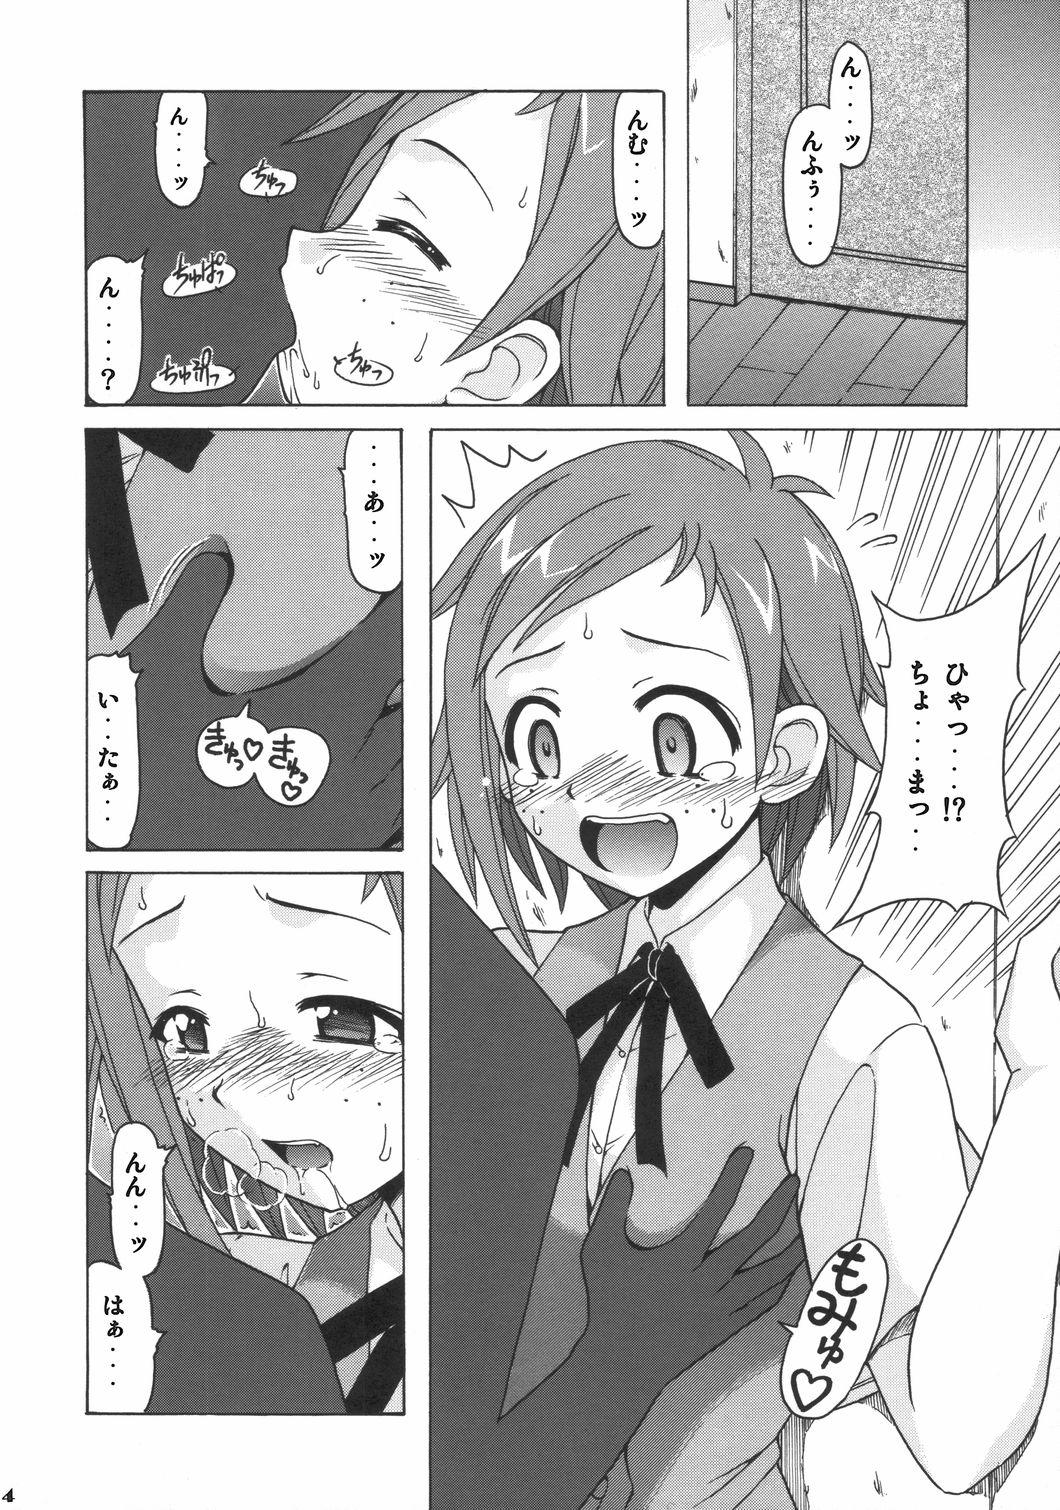 Mulata if CODE 06 Natsumi - Mahou sensei negima Toilet - Page 3